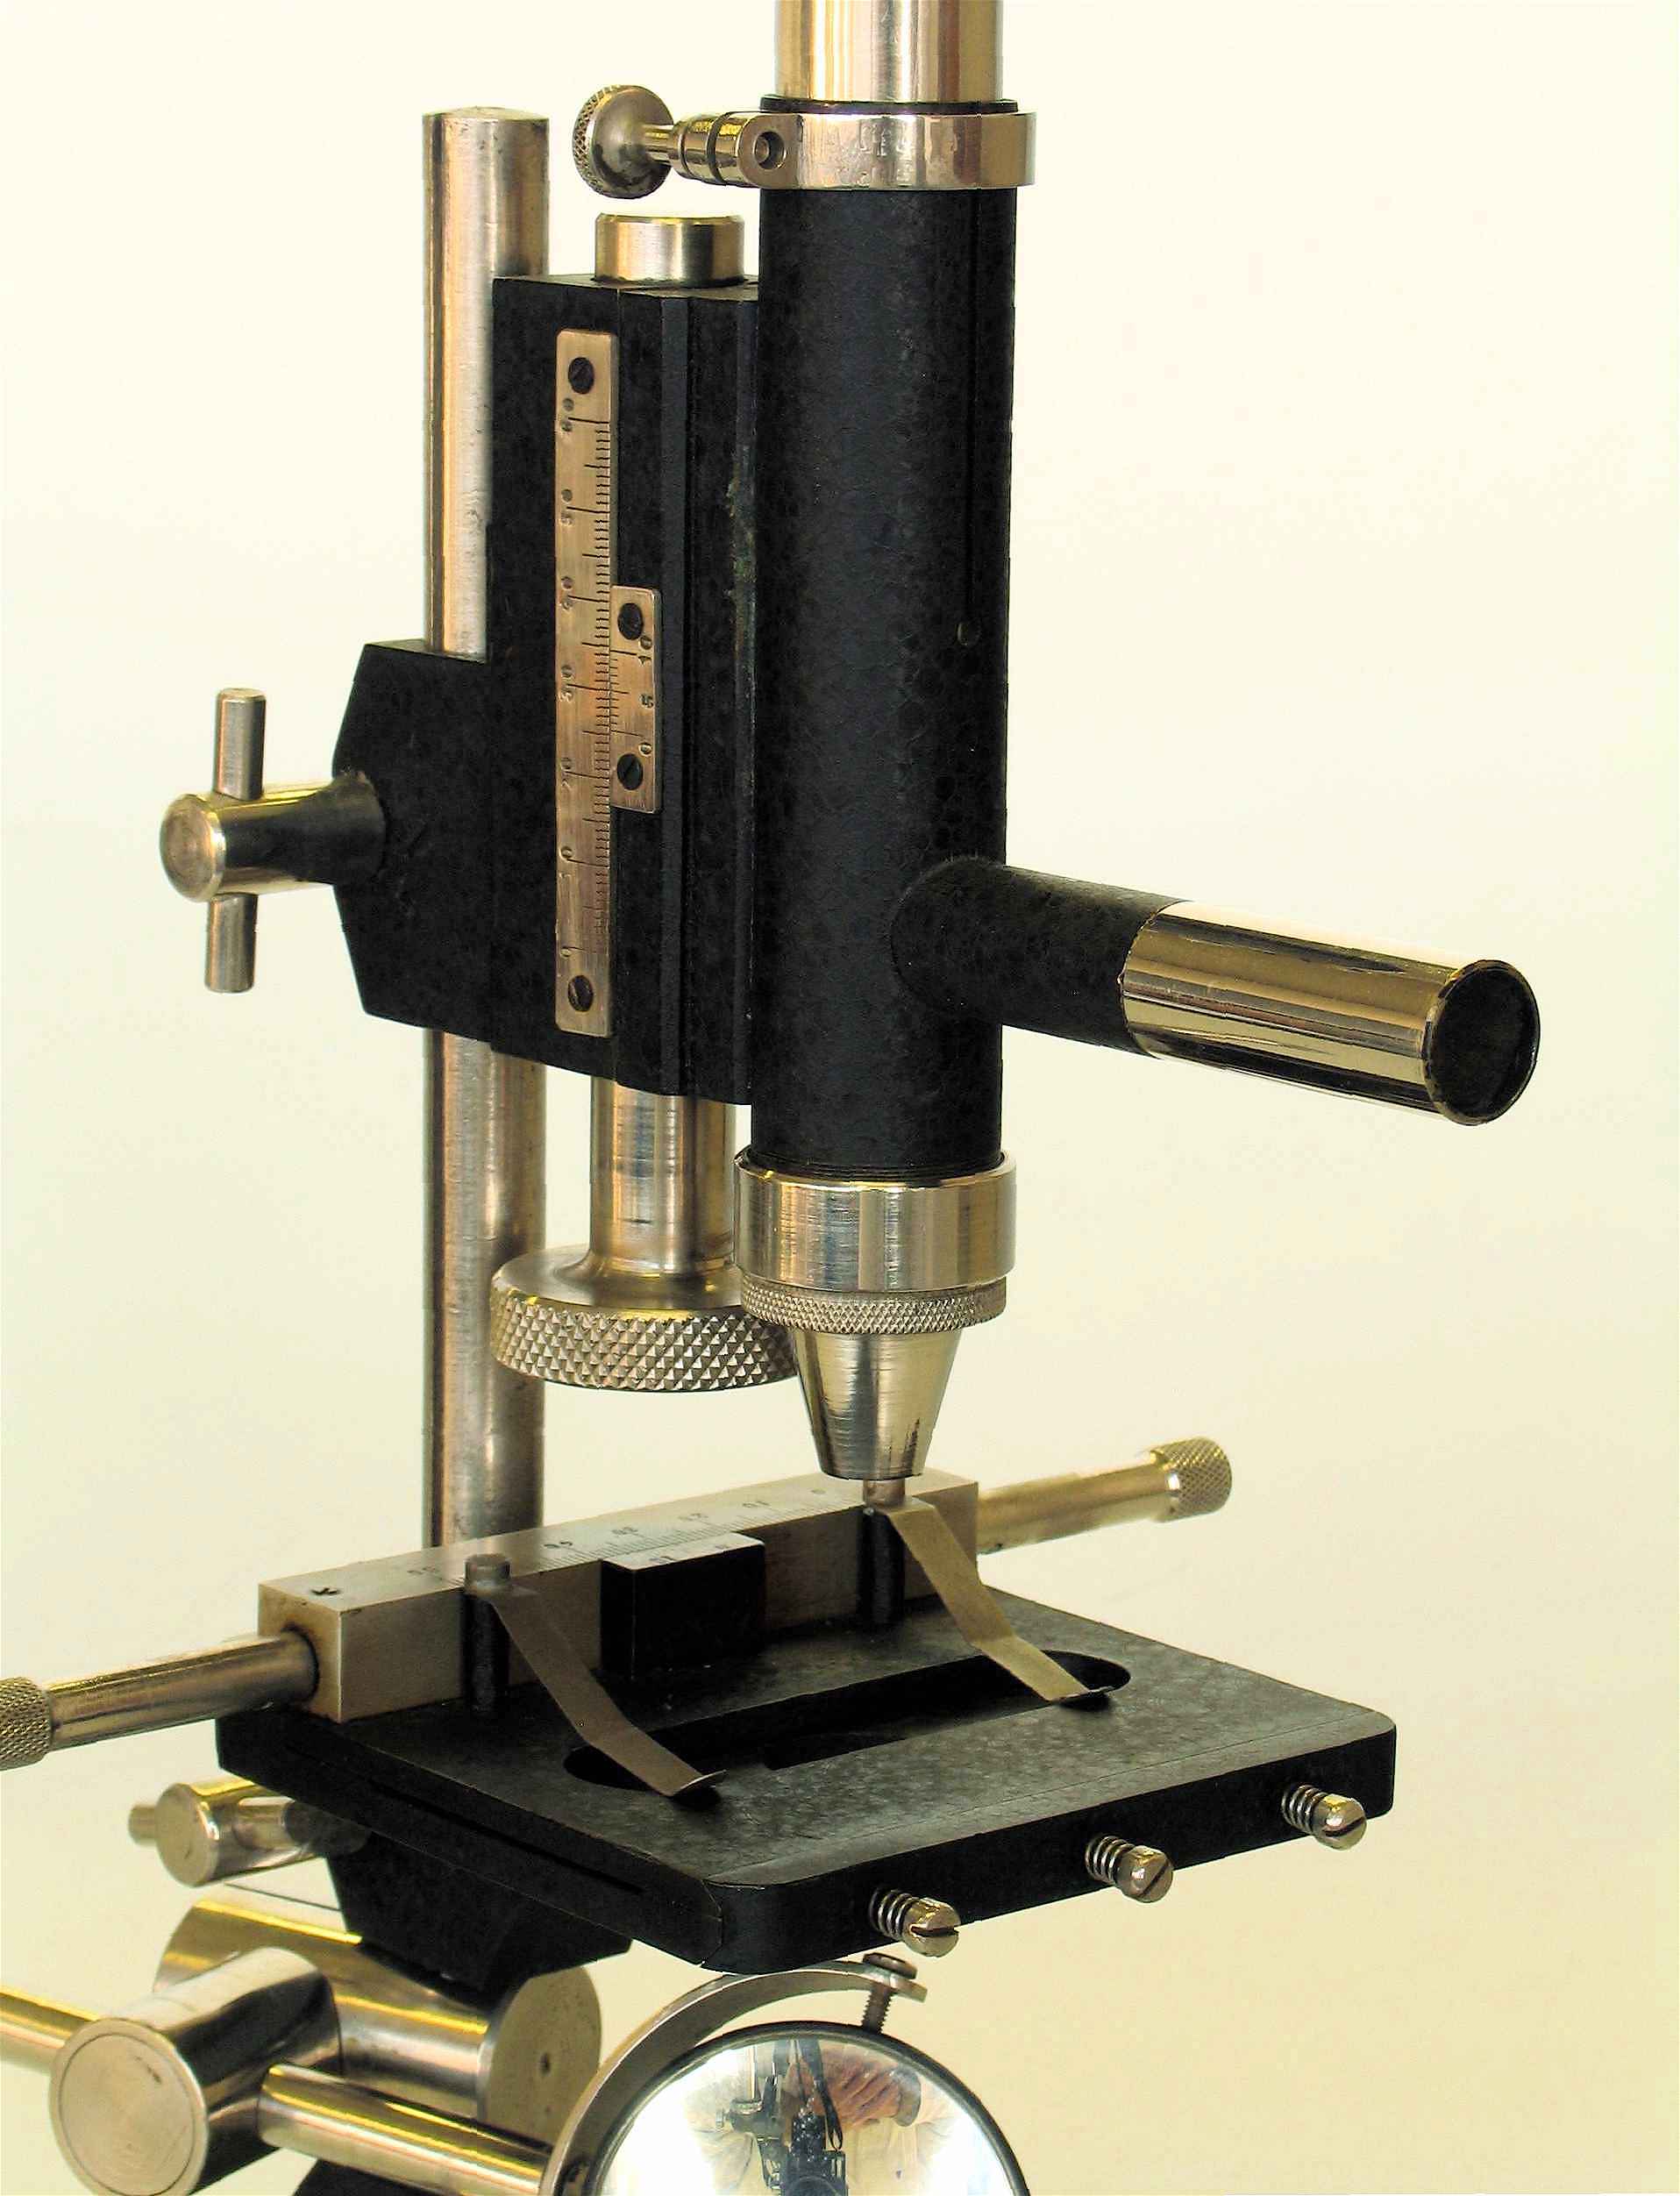 Microscope composé
(viseur Ginat)